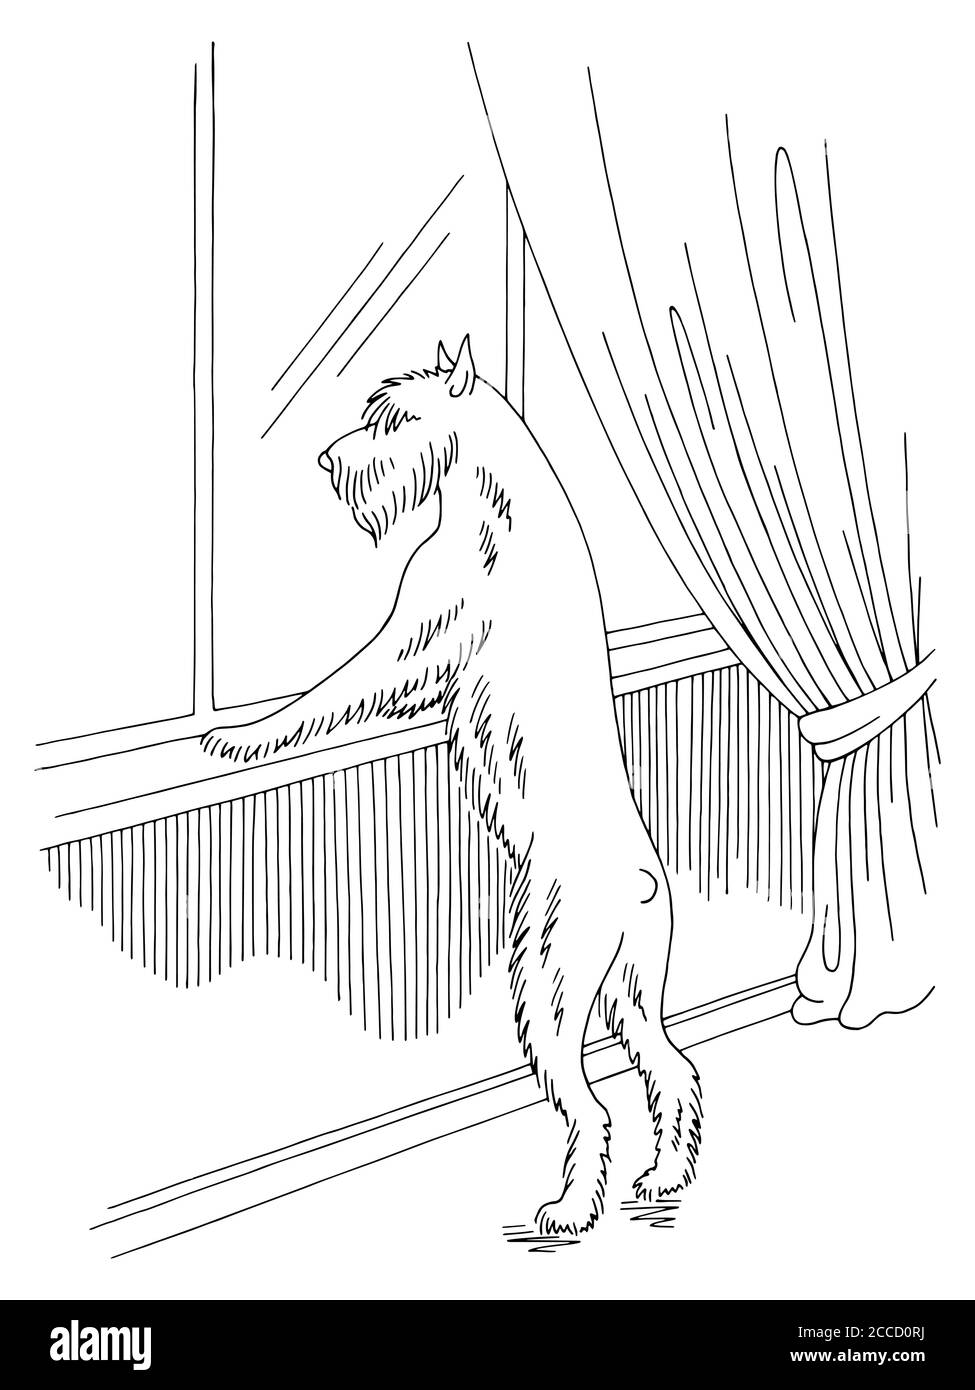 Hund schnauzer wartet auf Besitzer Blick aus dem Fenster Grafik Schwarz-weiße Skizzendarstellung Vektor Stock Vektor